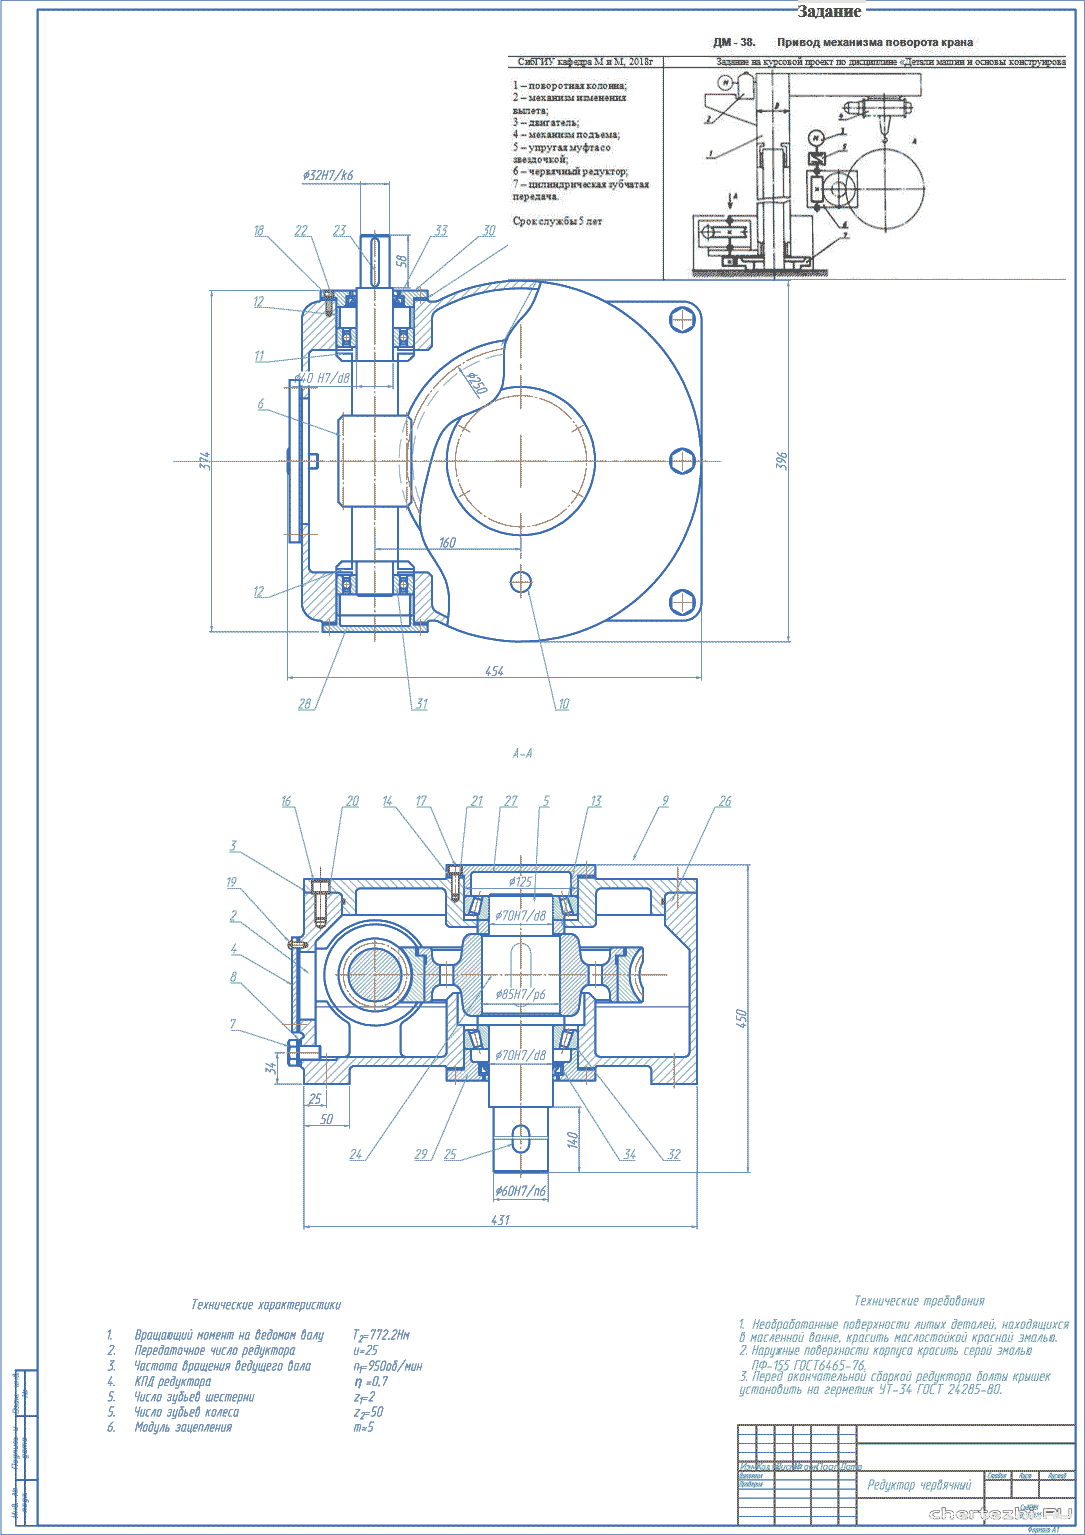 Курсовой проект - Проектирование привода механизма поворота крана